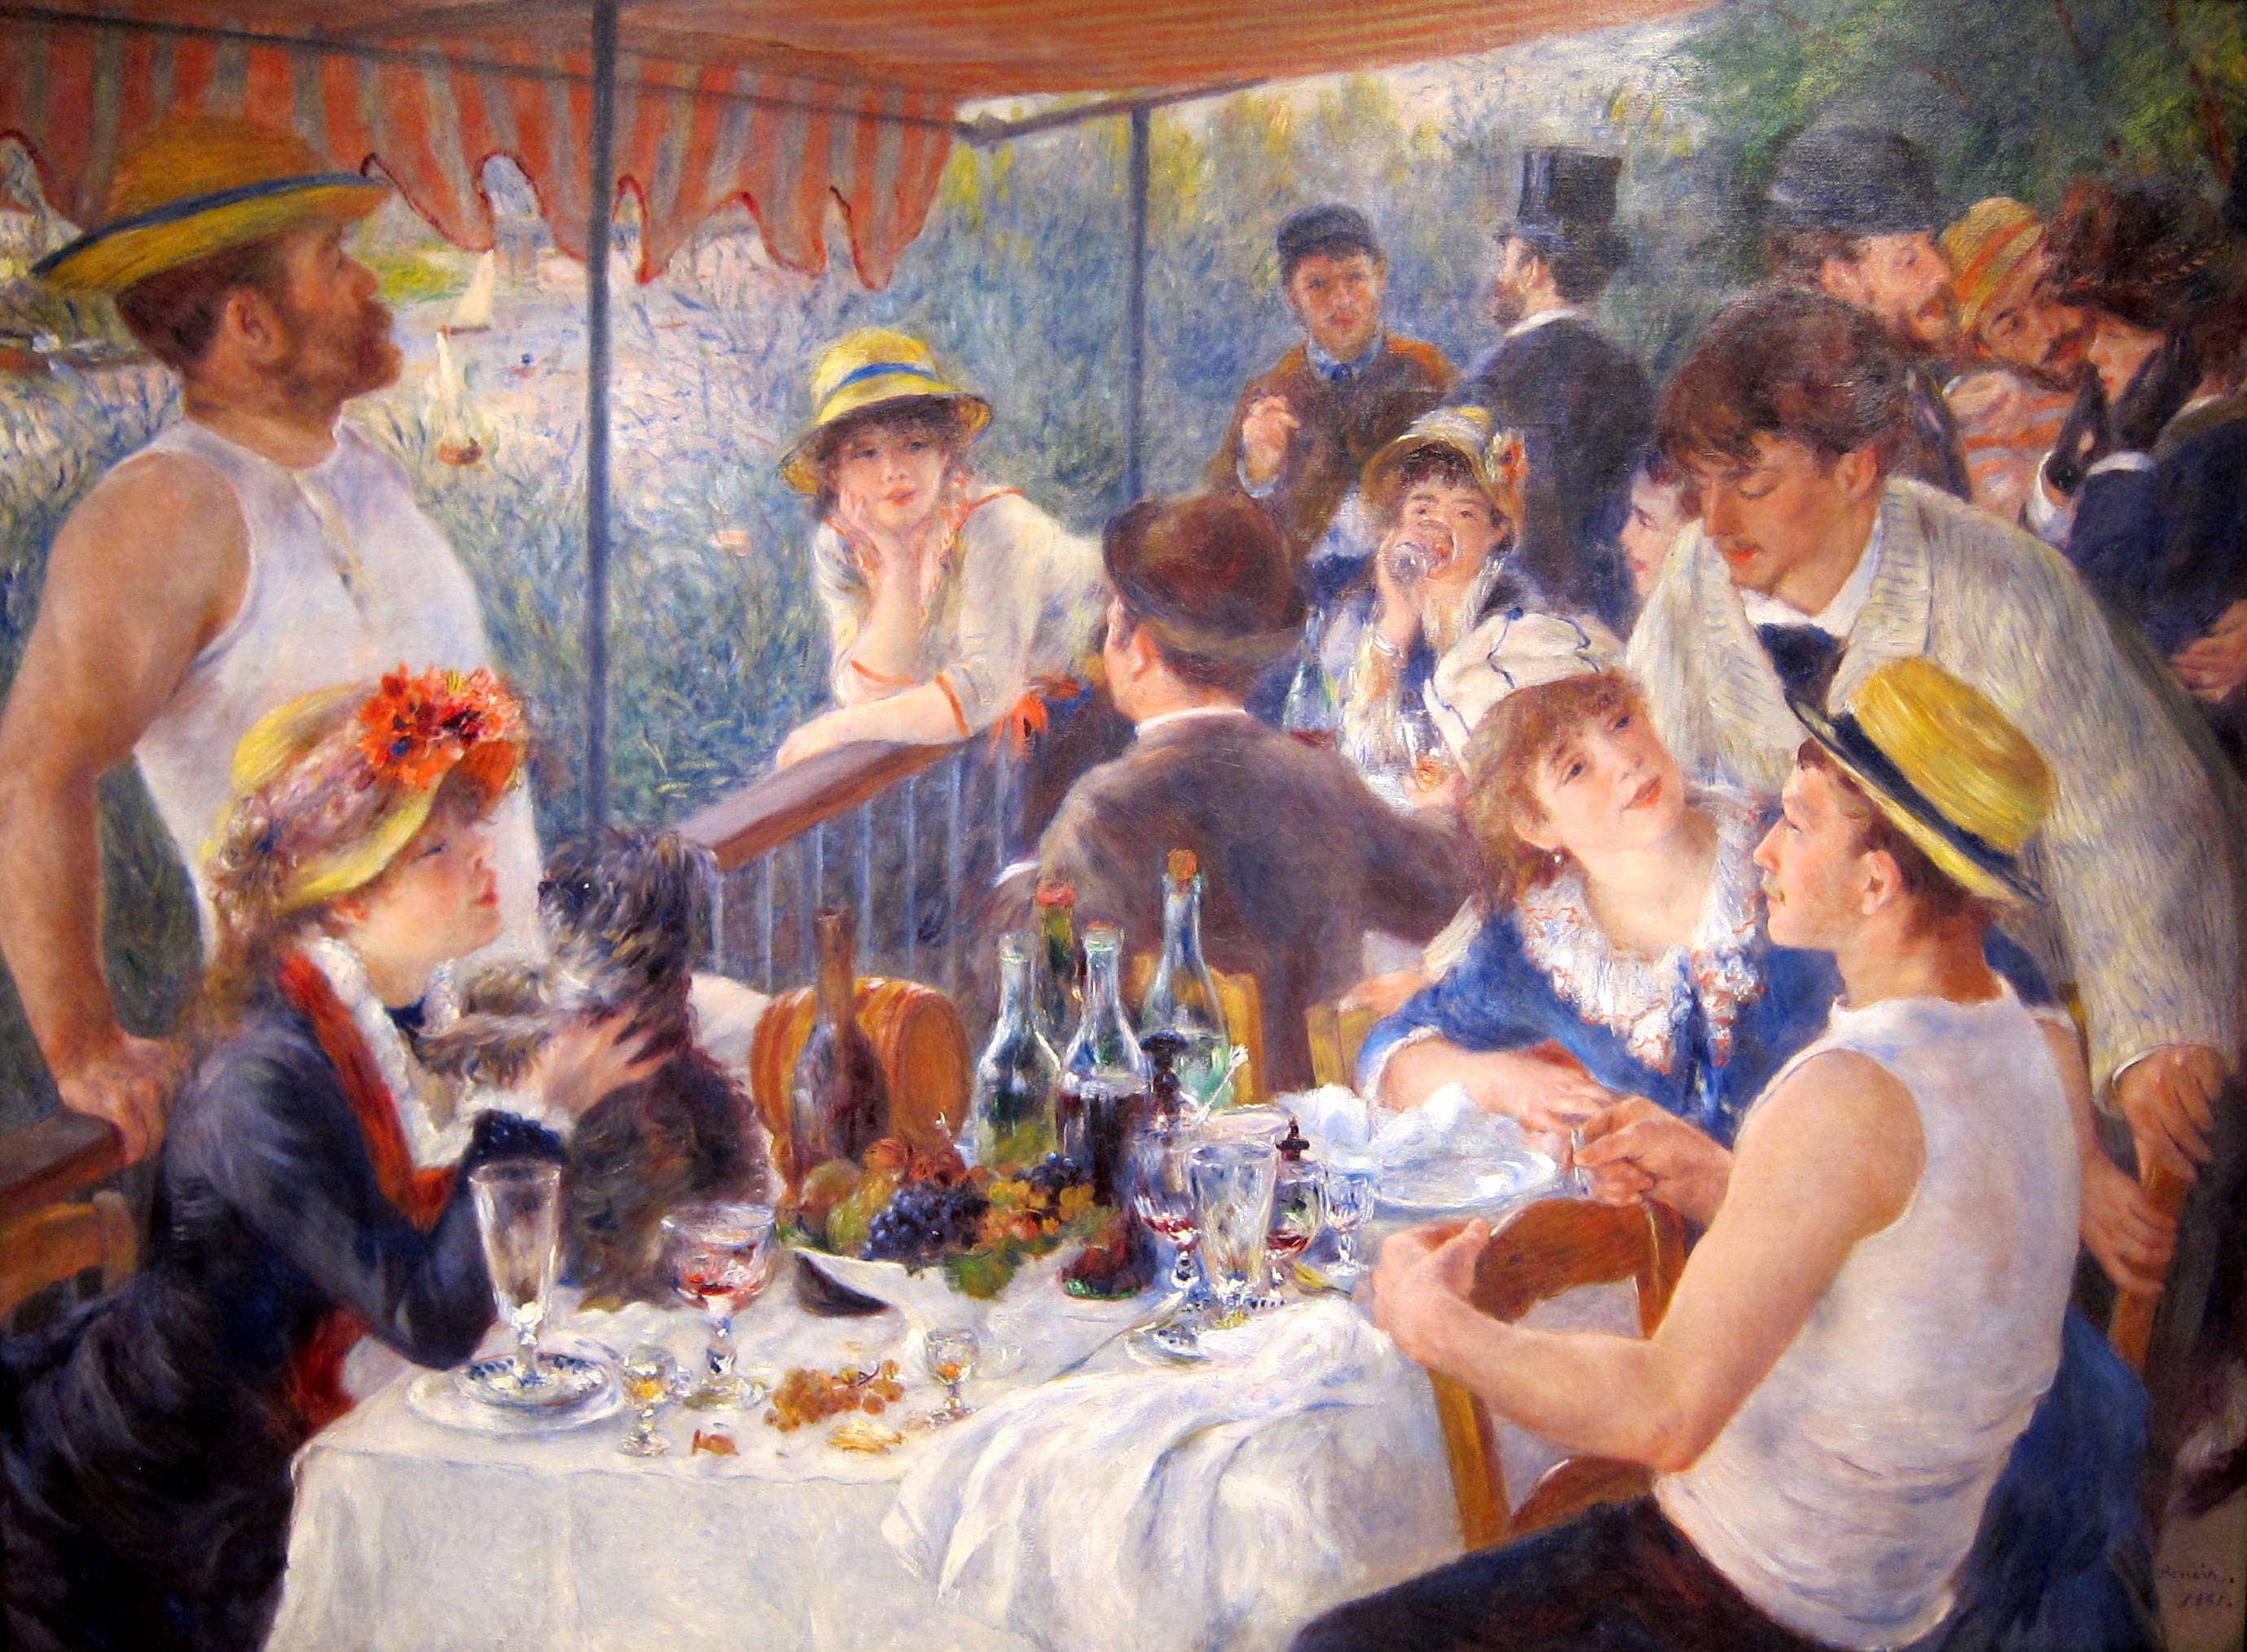 A csónakázó parti ebéd by Pierre-Auguste Renoir - 1880 - 129.9 × 172.7 cm 